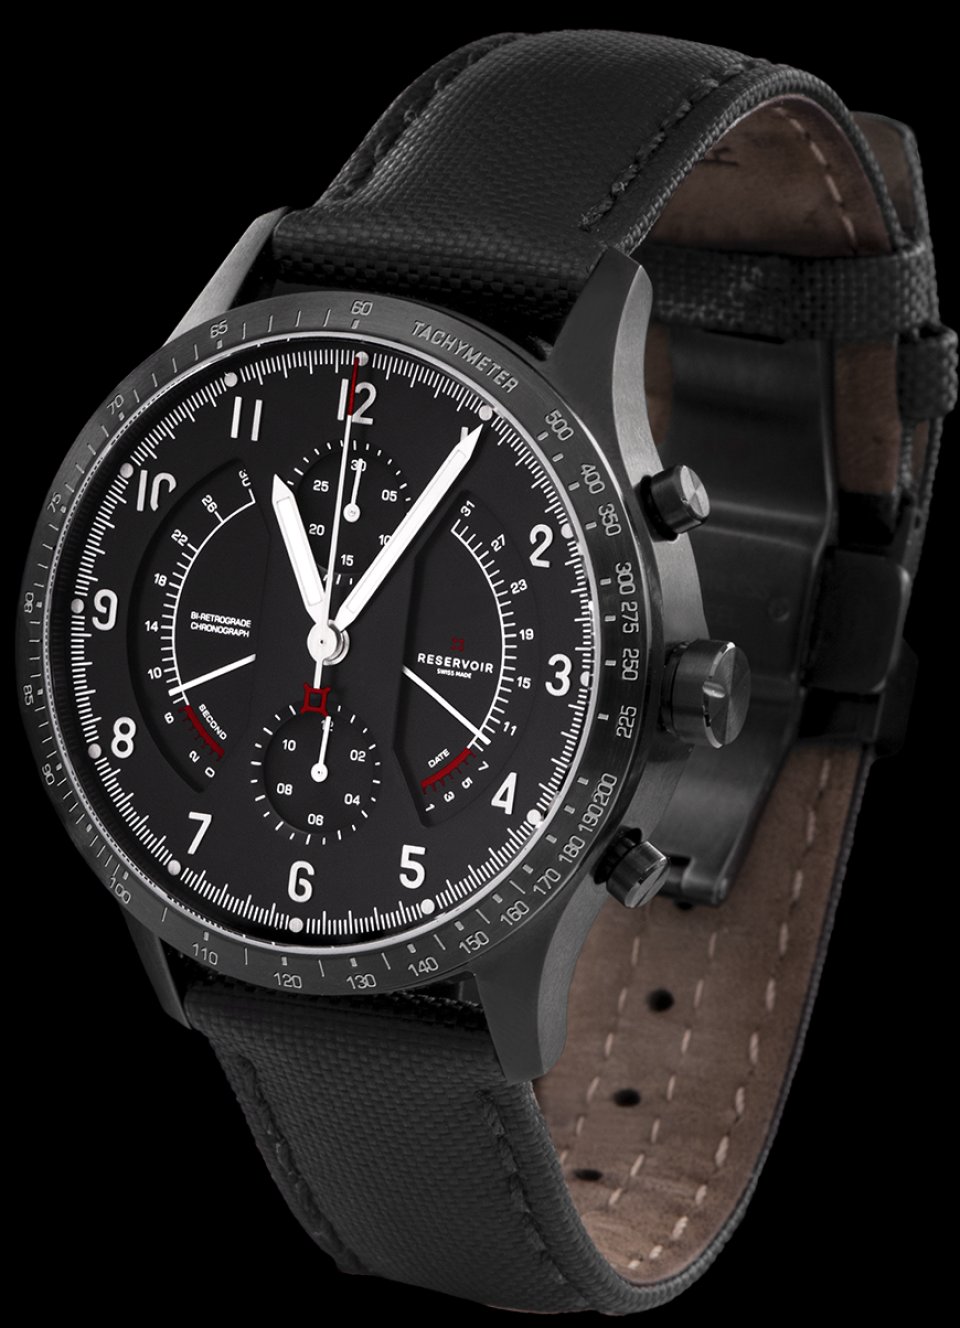 フランスの腕時計ブランド『レゼルボワール』が「ソノマス ター クロノ